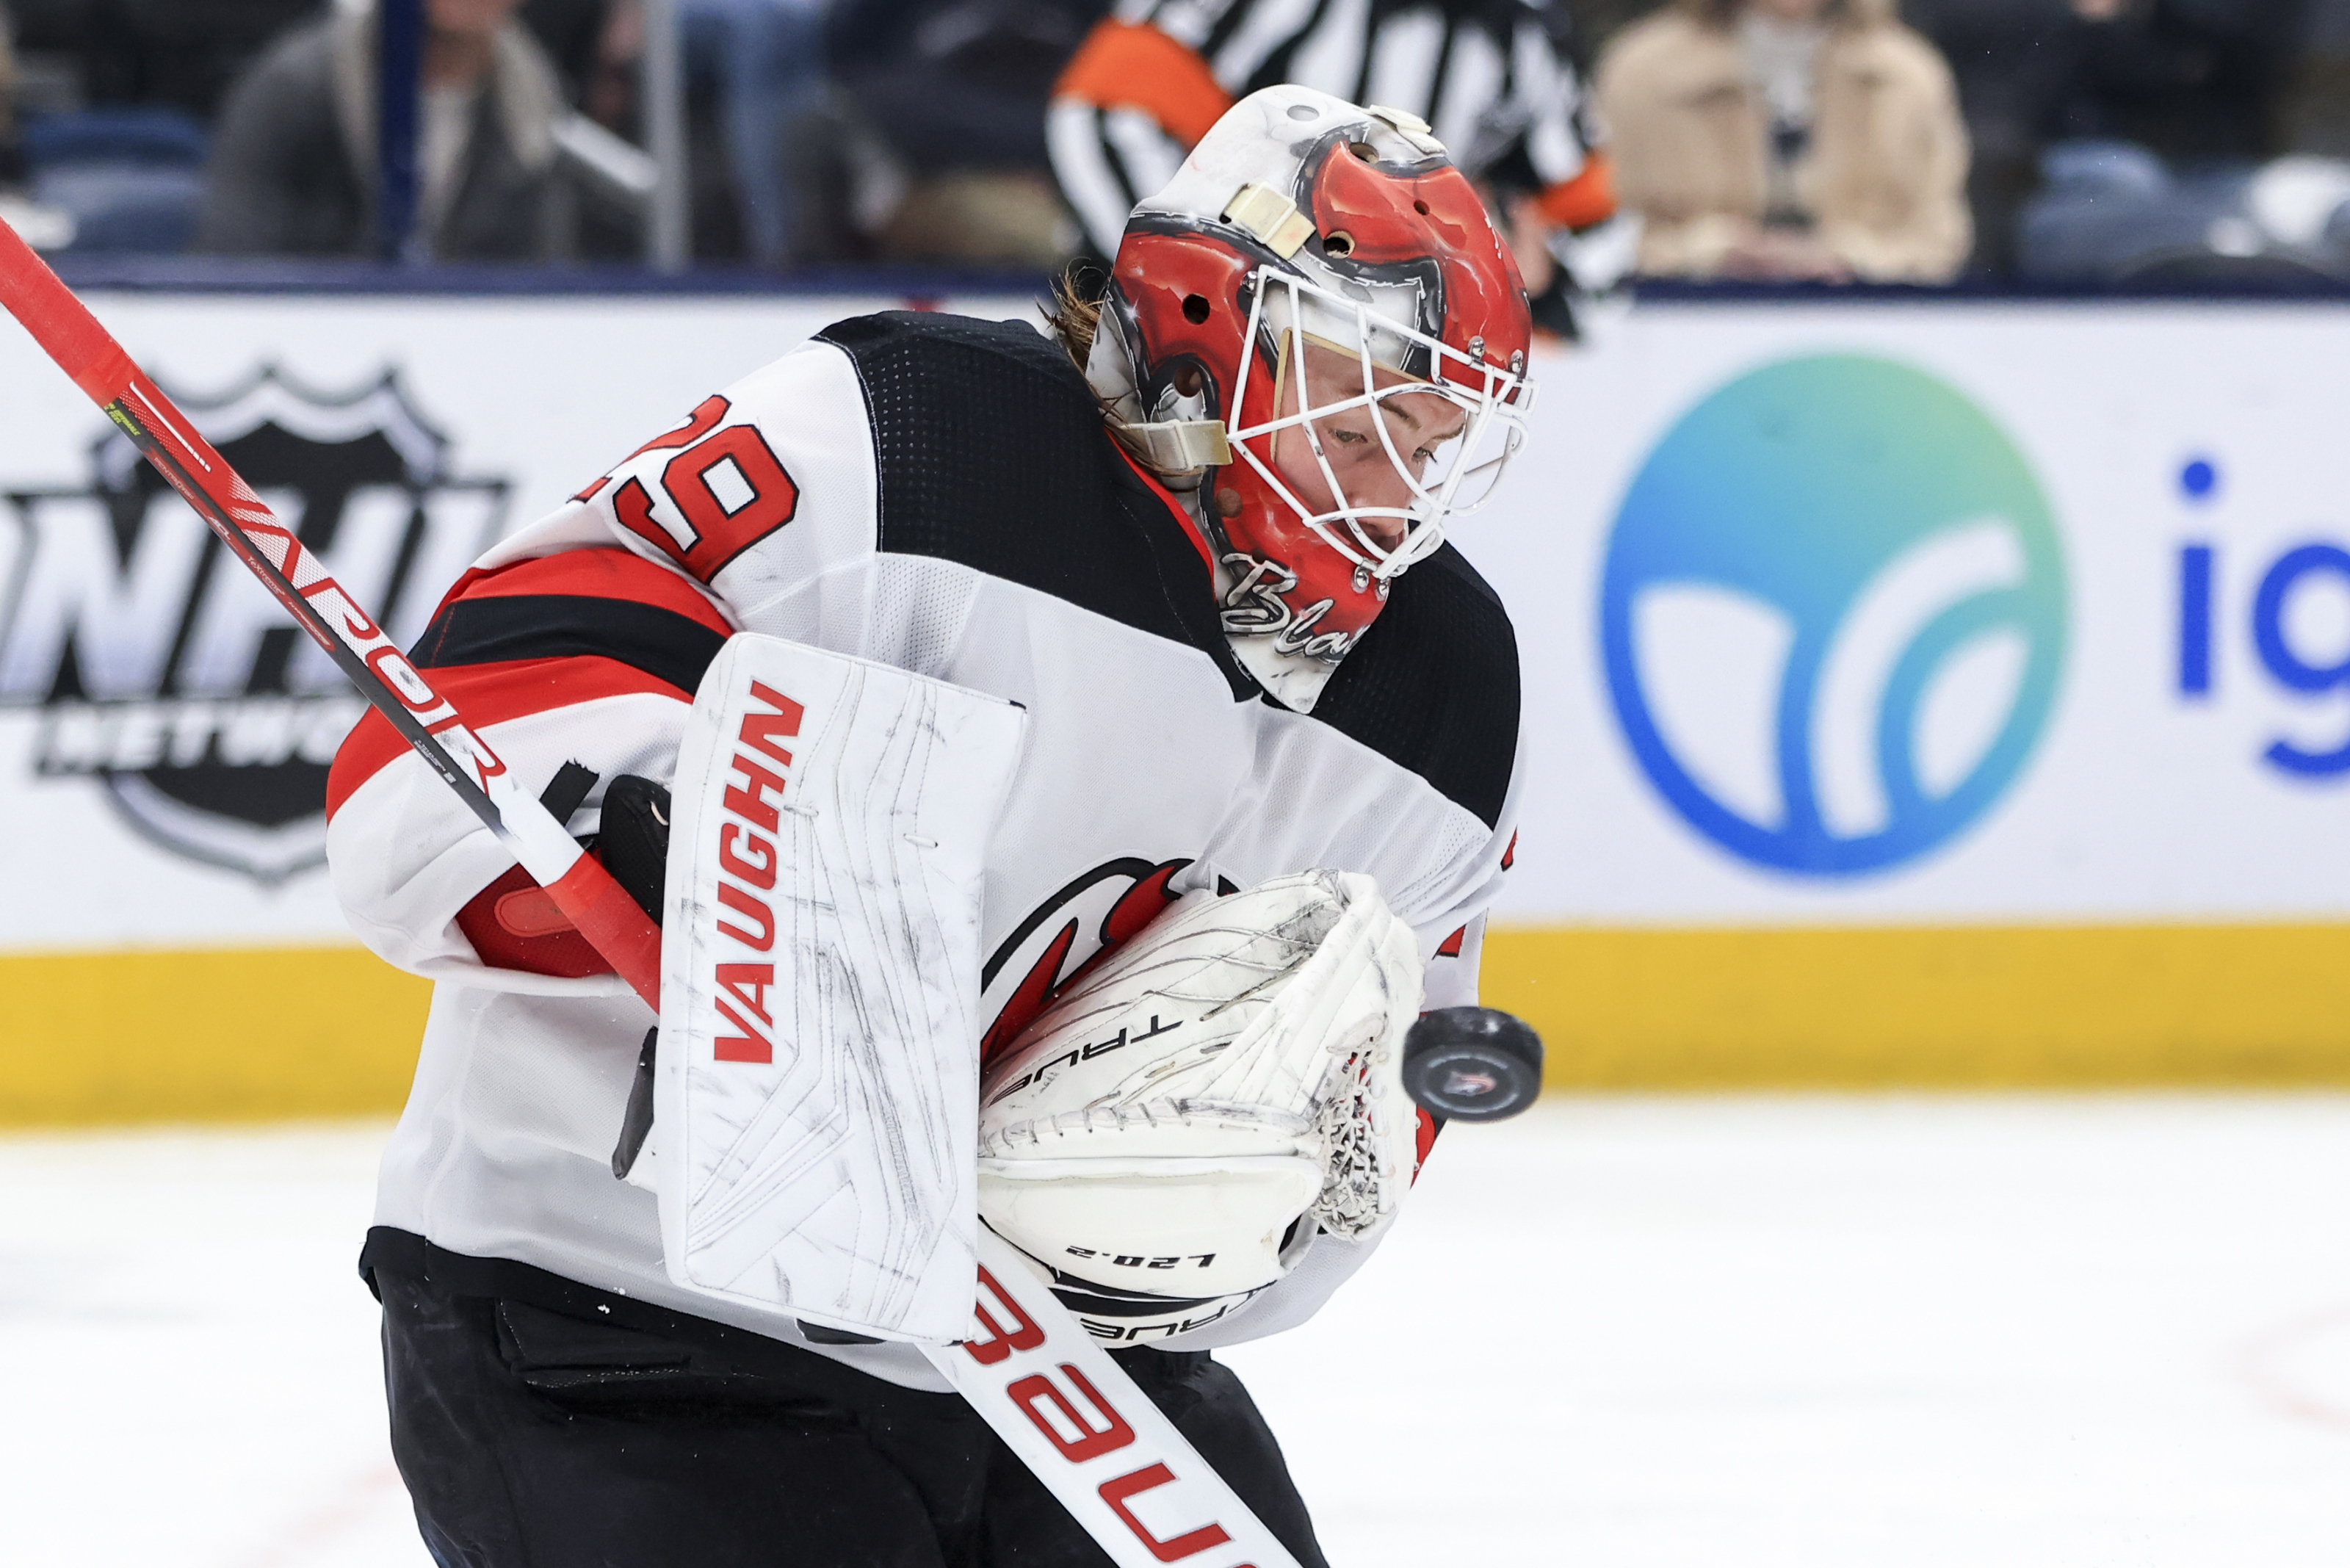 Break Down of Mackenzie Blackwood's NHL Debut